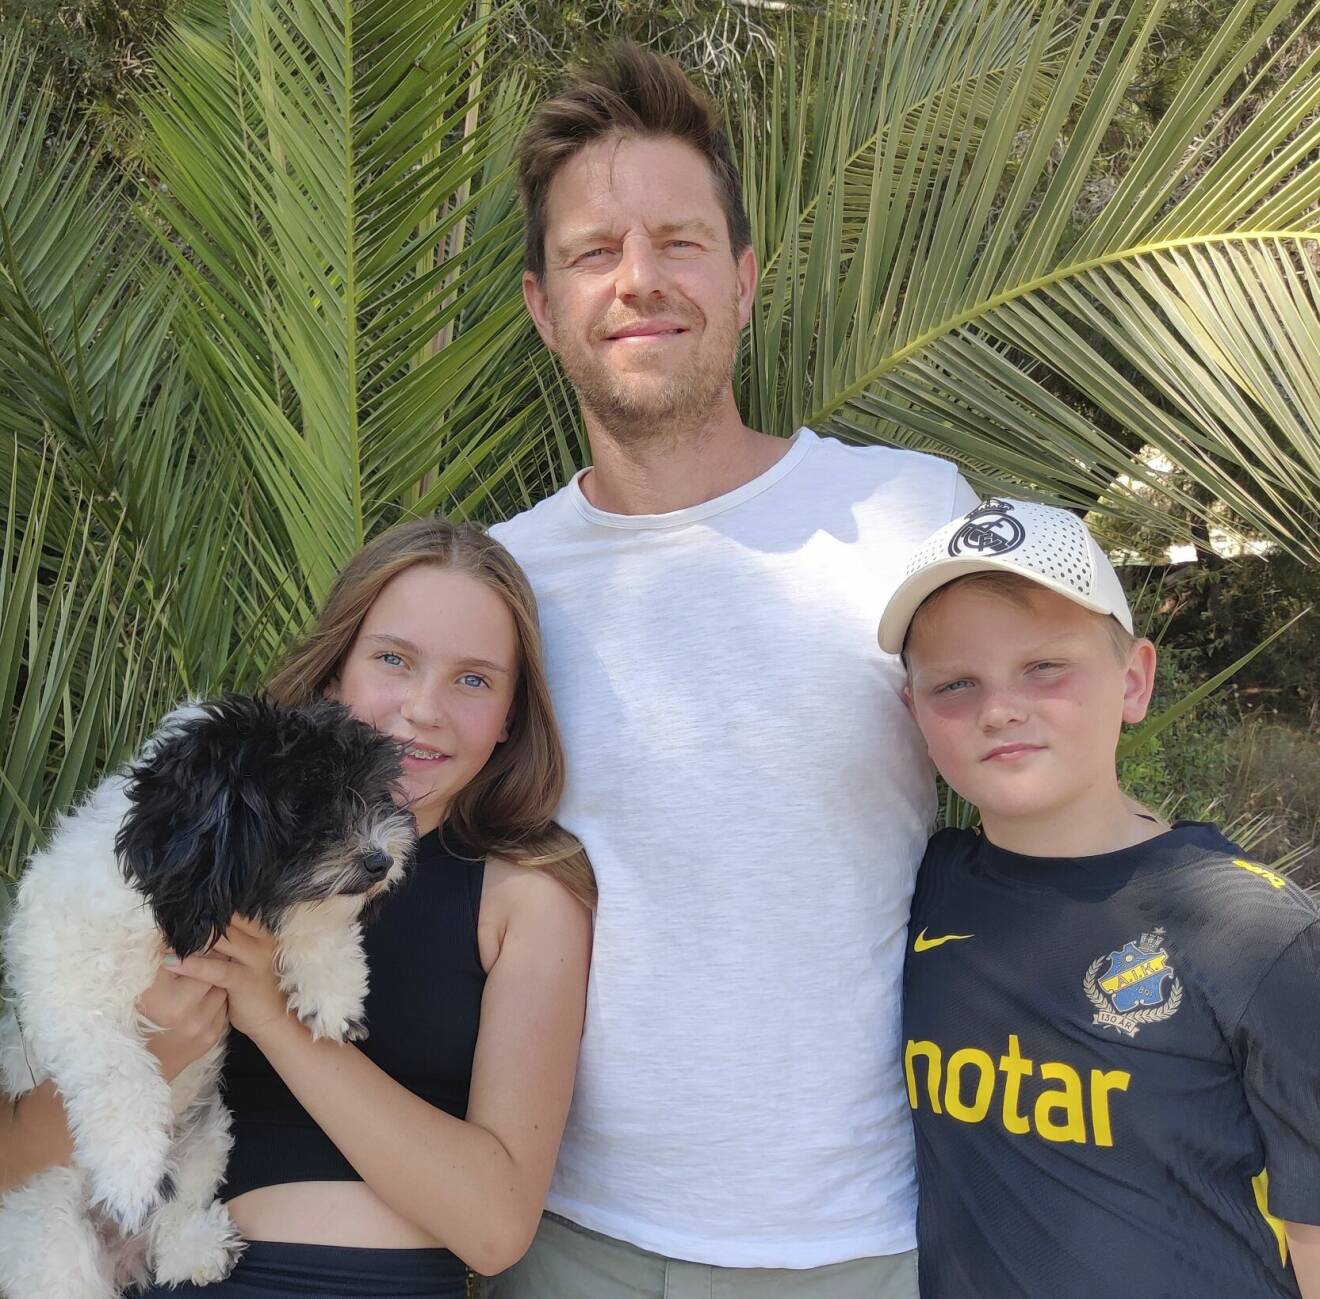 Cystisk fibros-sjuka Alice håller upp sin hund, tillsammans med sin bror och pappa under en palm.